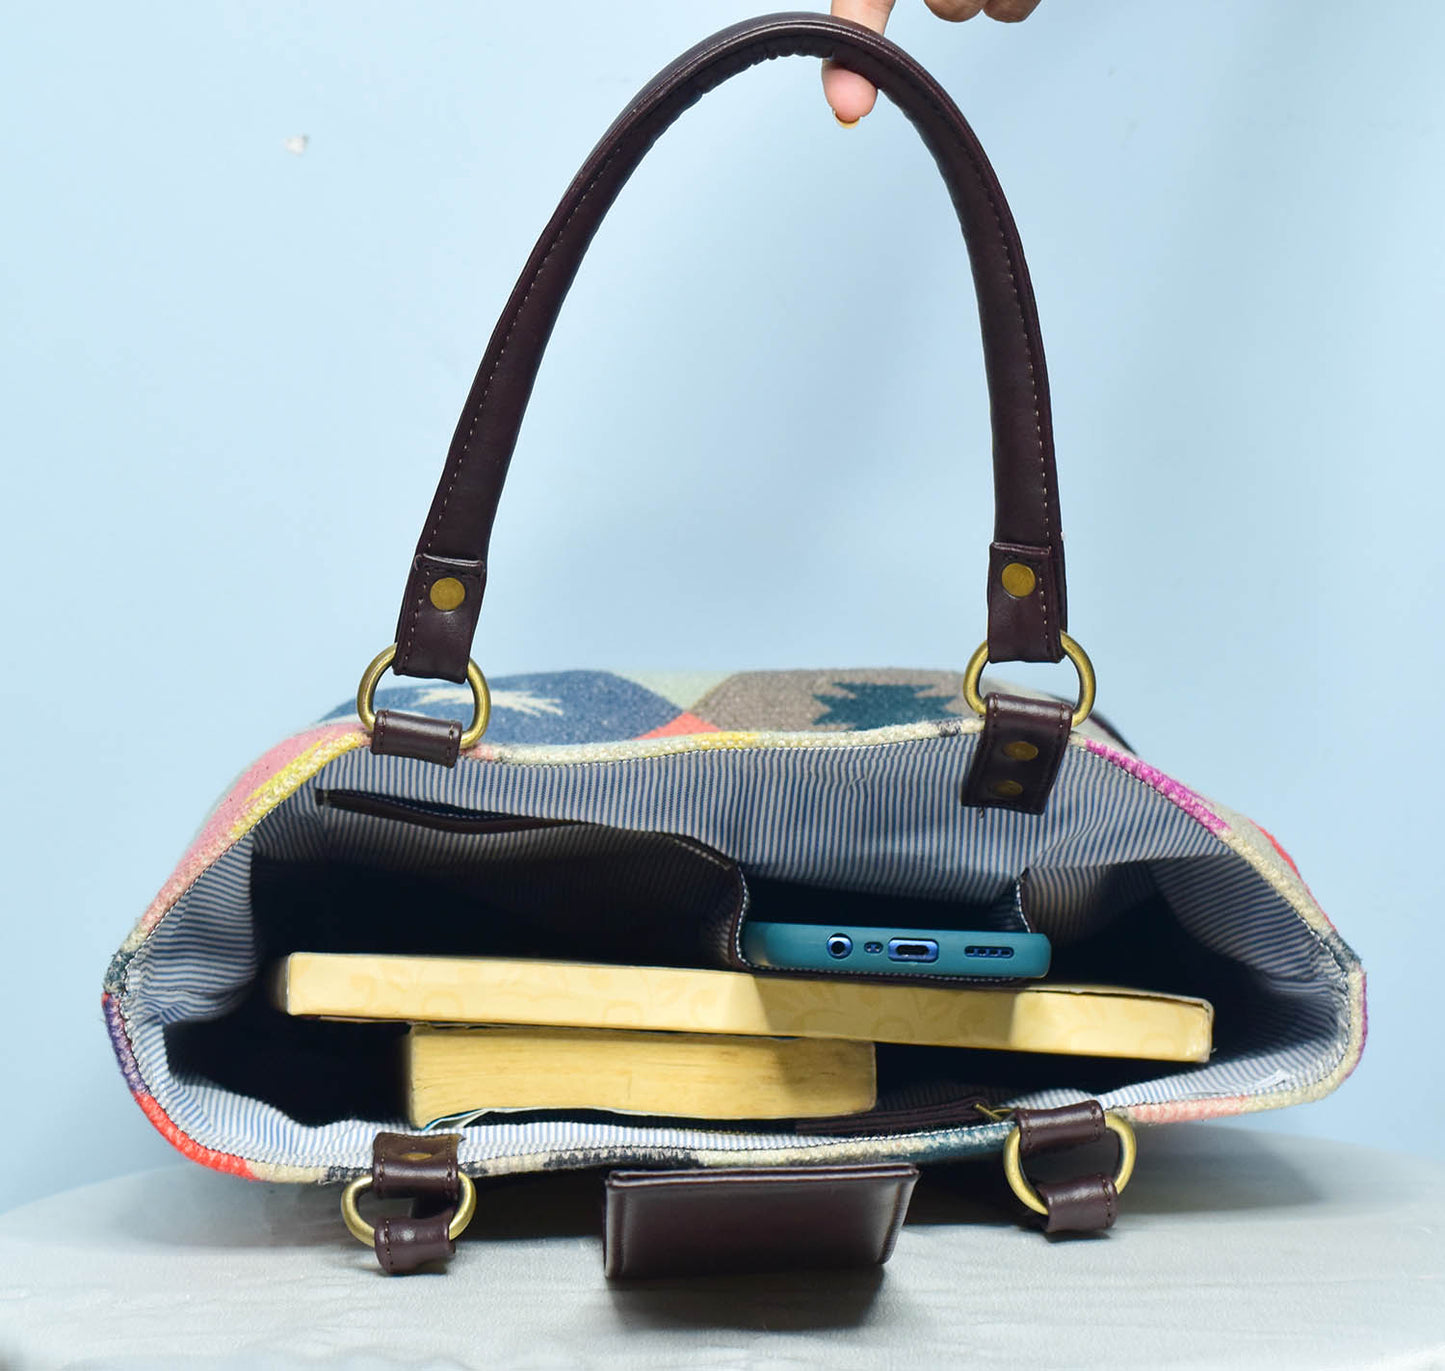 The Colorful Box Handbag